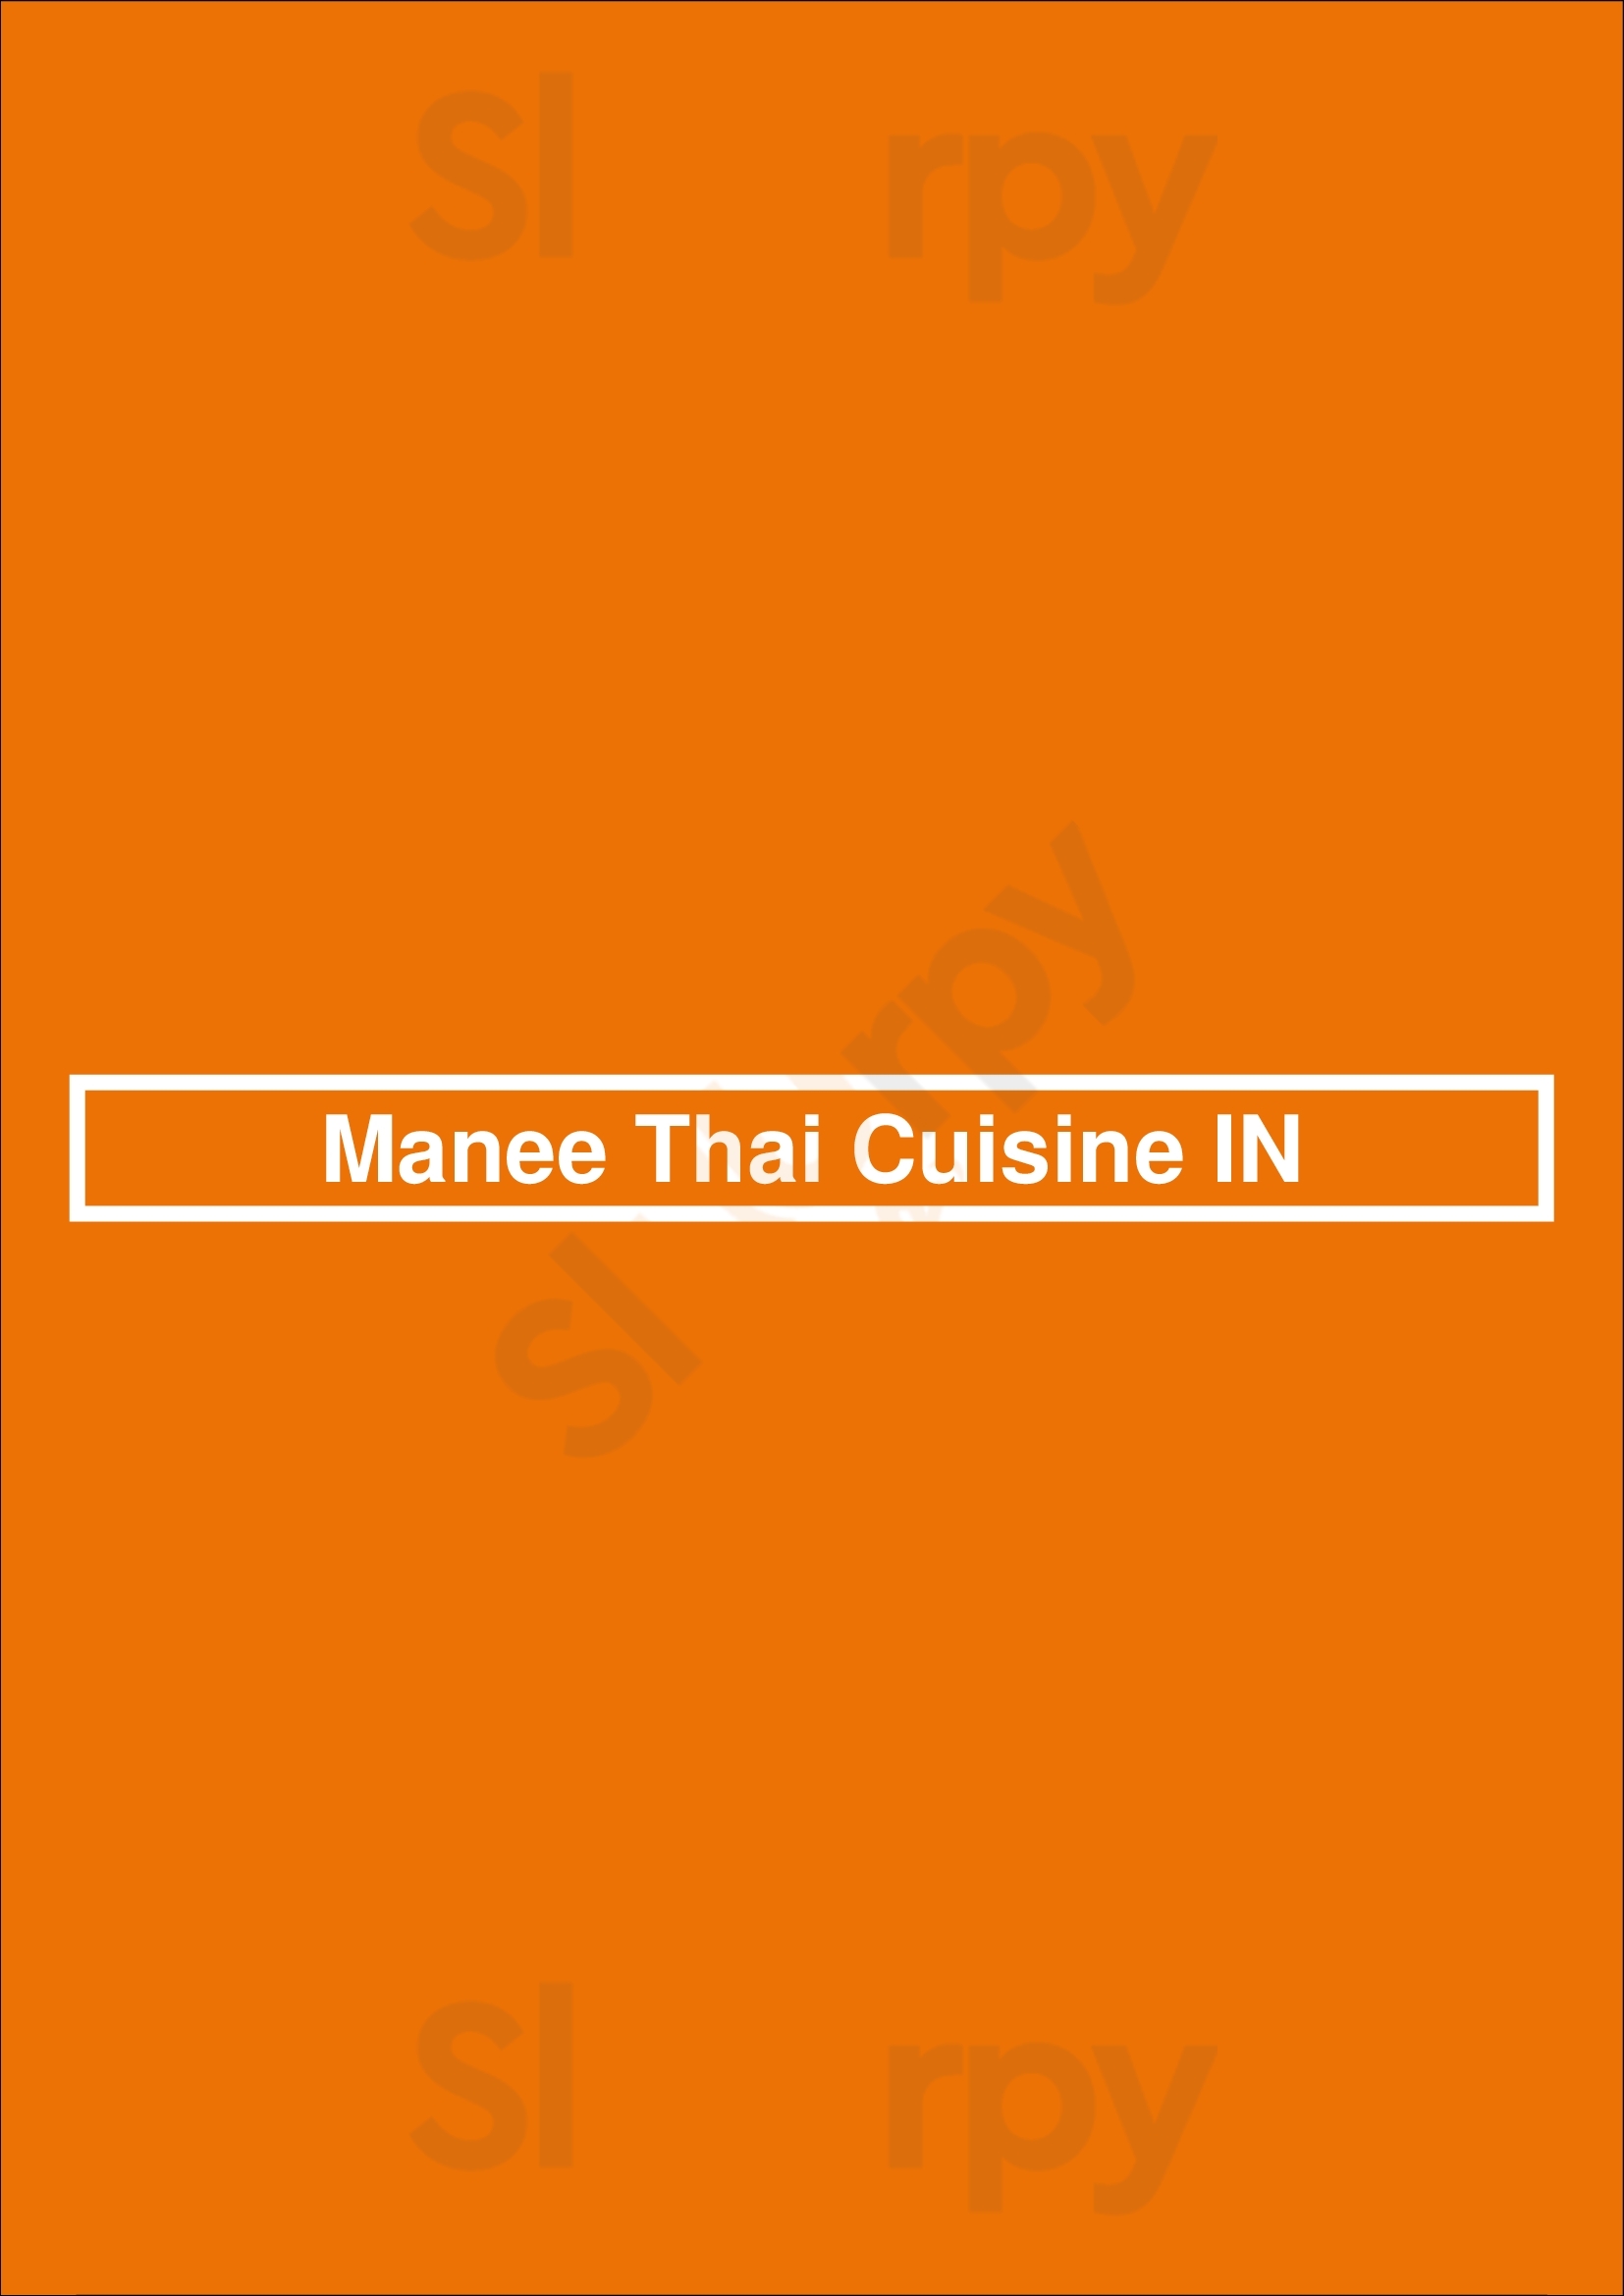 Manee Thai Cuisine In Indianapolis Menu - 1